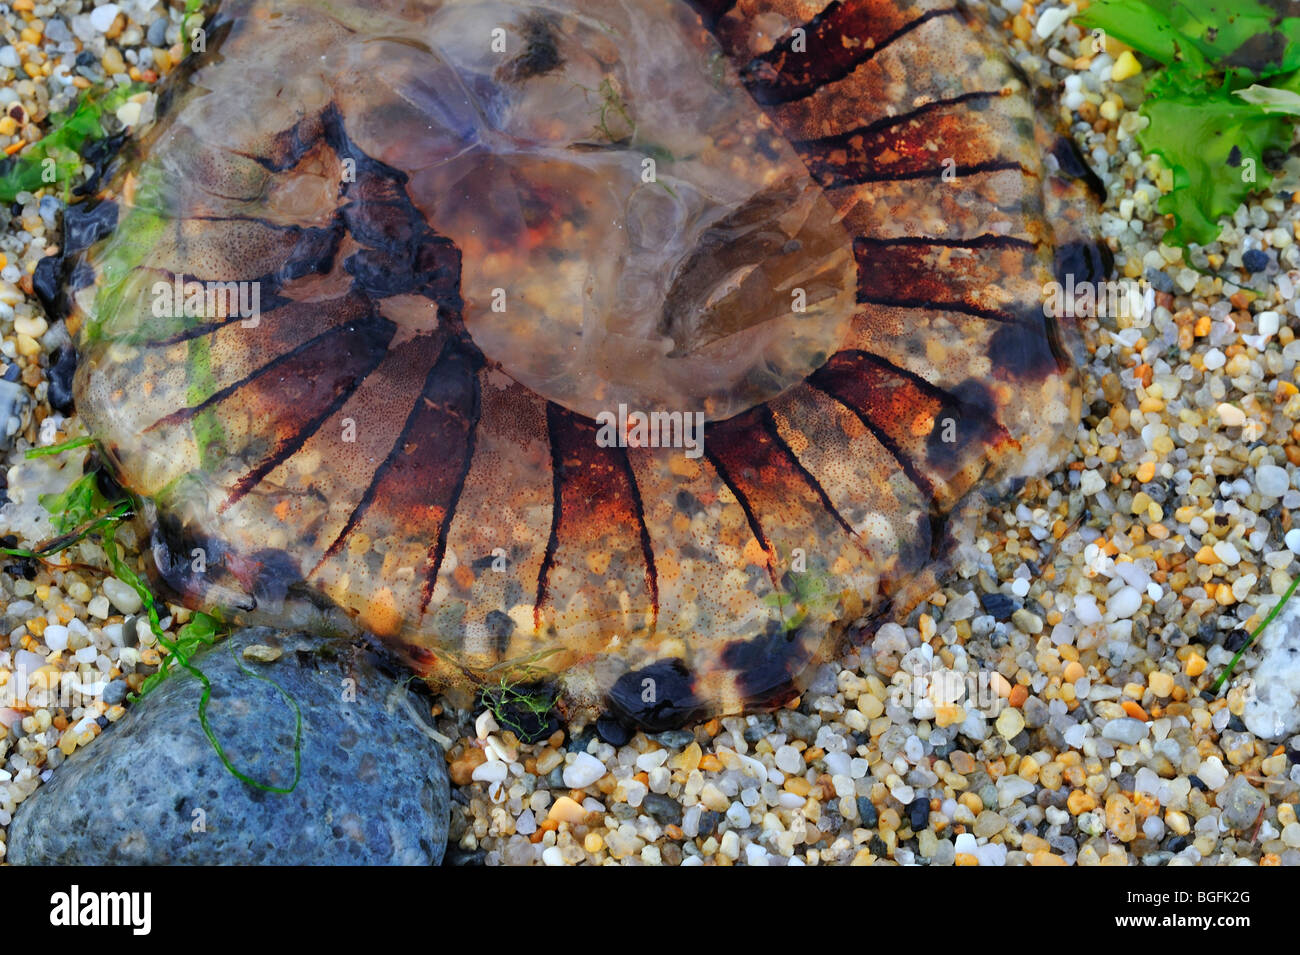 Méduse Chrysaora hysoscella (boussole) s'est échoué sur la plage Banque D'Images